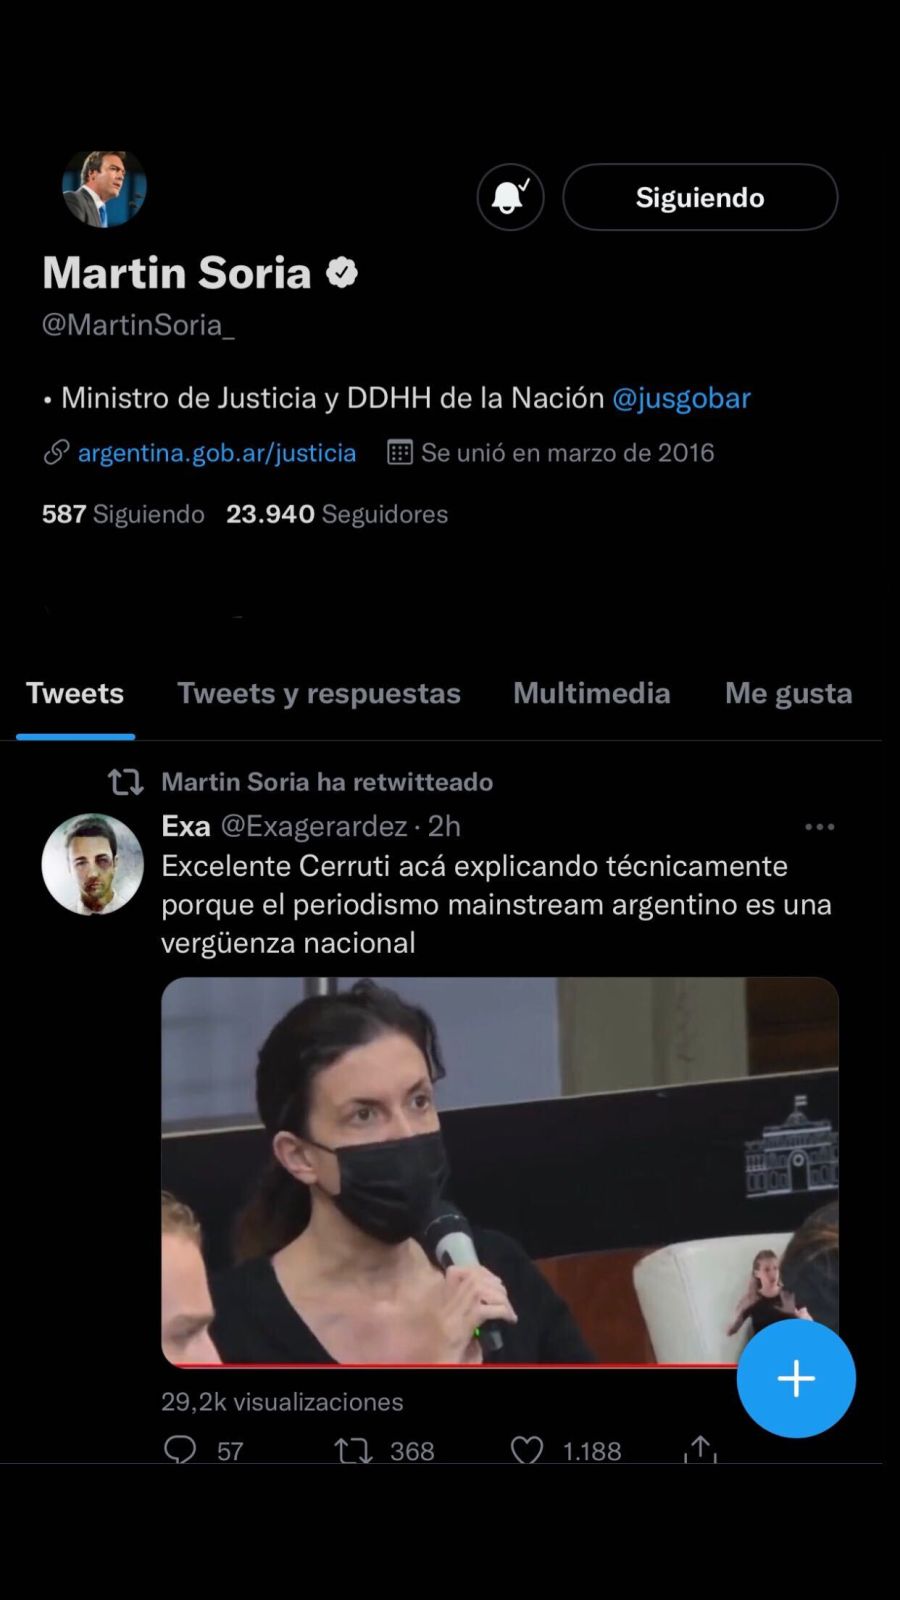 Martín Soria retweet